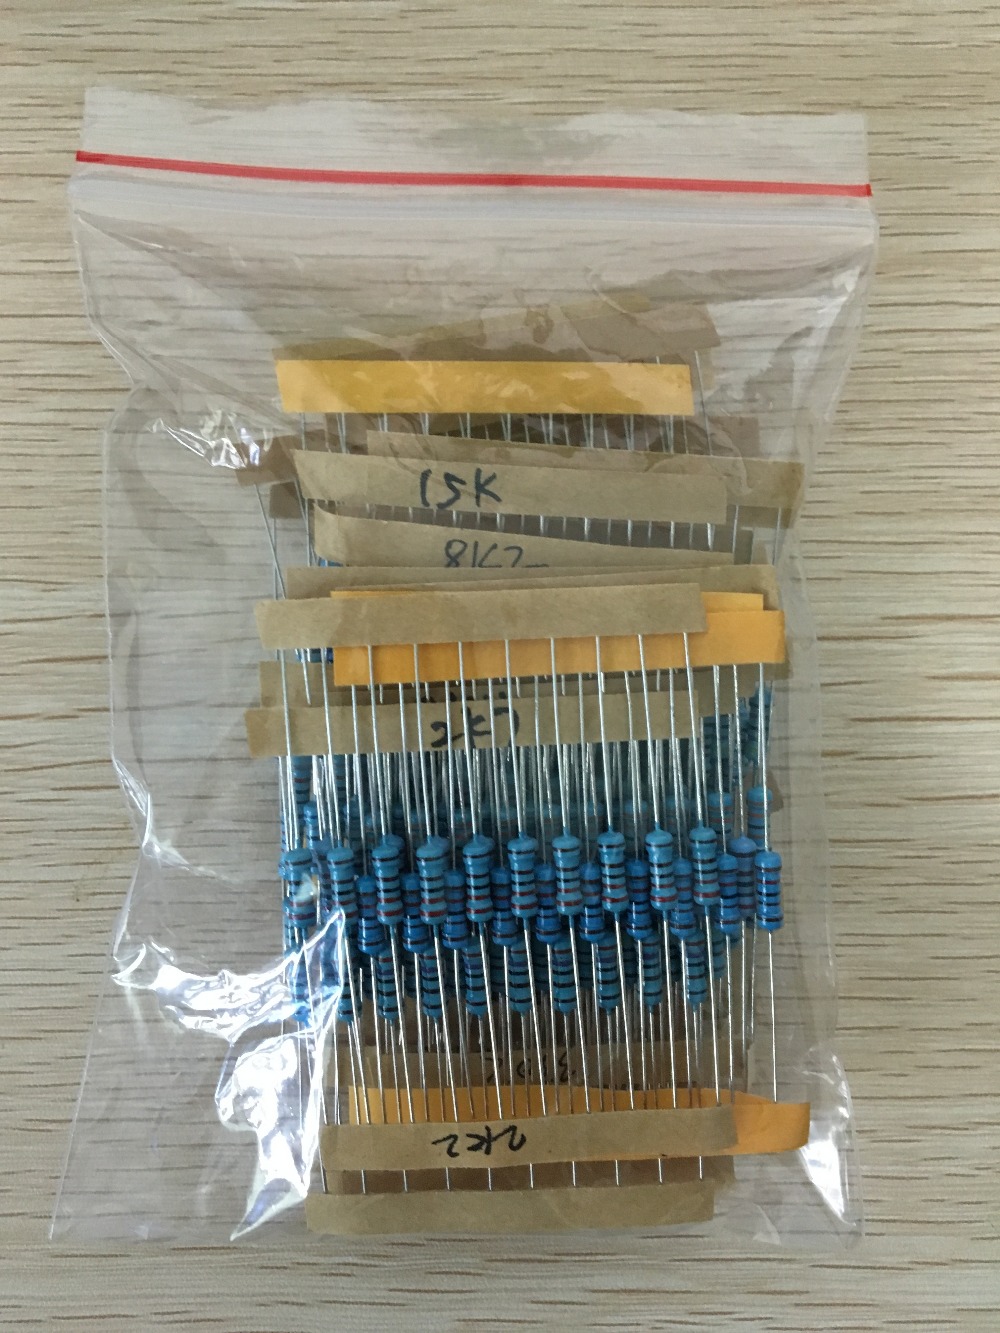 300pcs 1K-1M Ohm 1/2w Resistance 1% Metal Film Resistor Assortment Kit Set 30Kinds*10pcs=300PCS Free Shipping